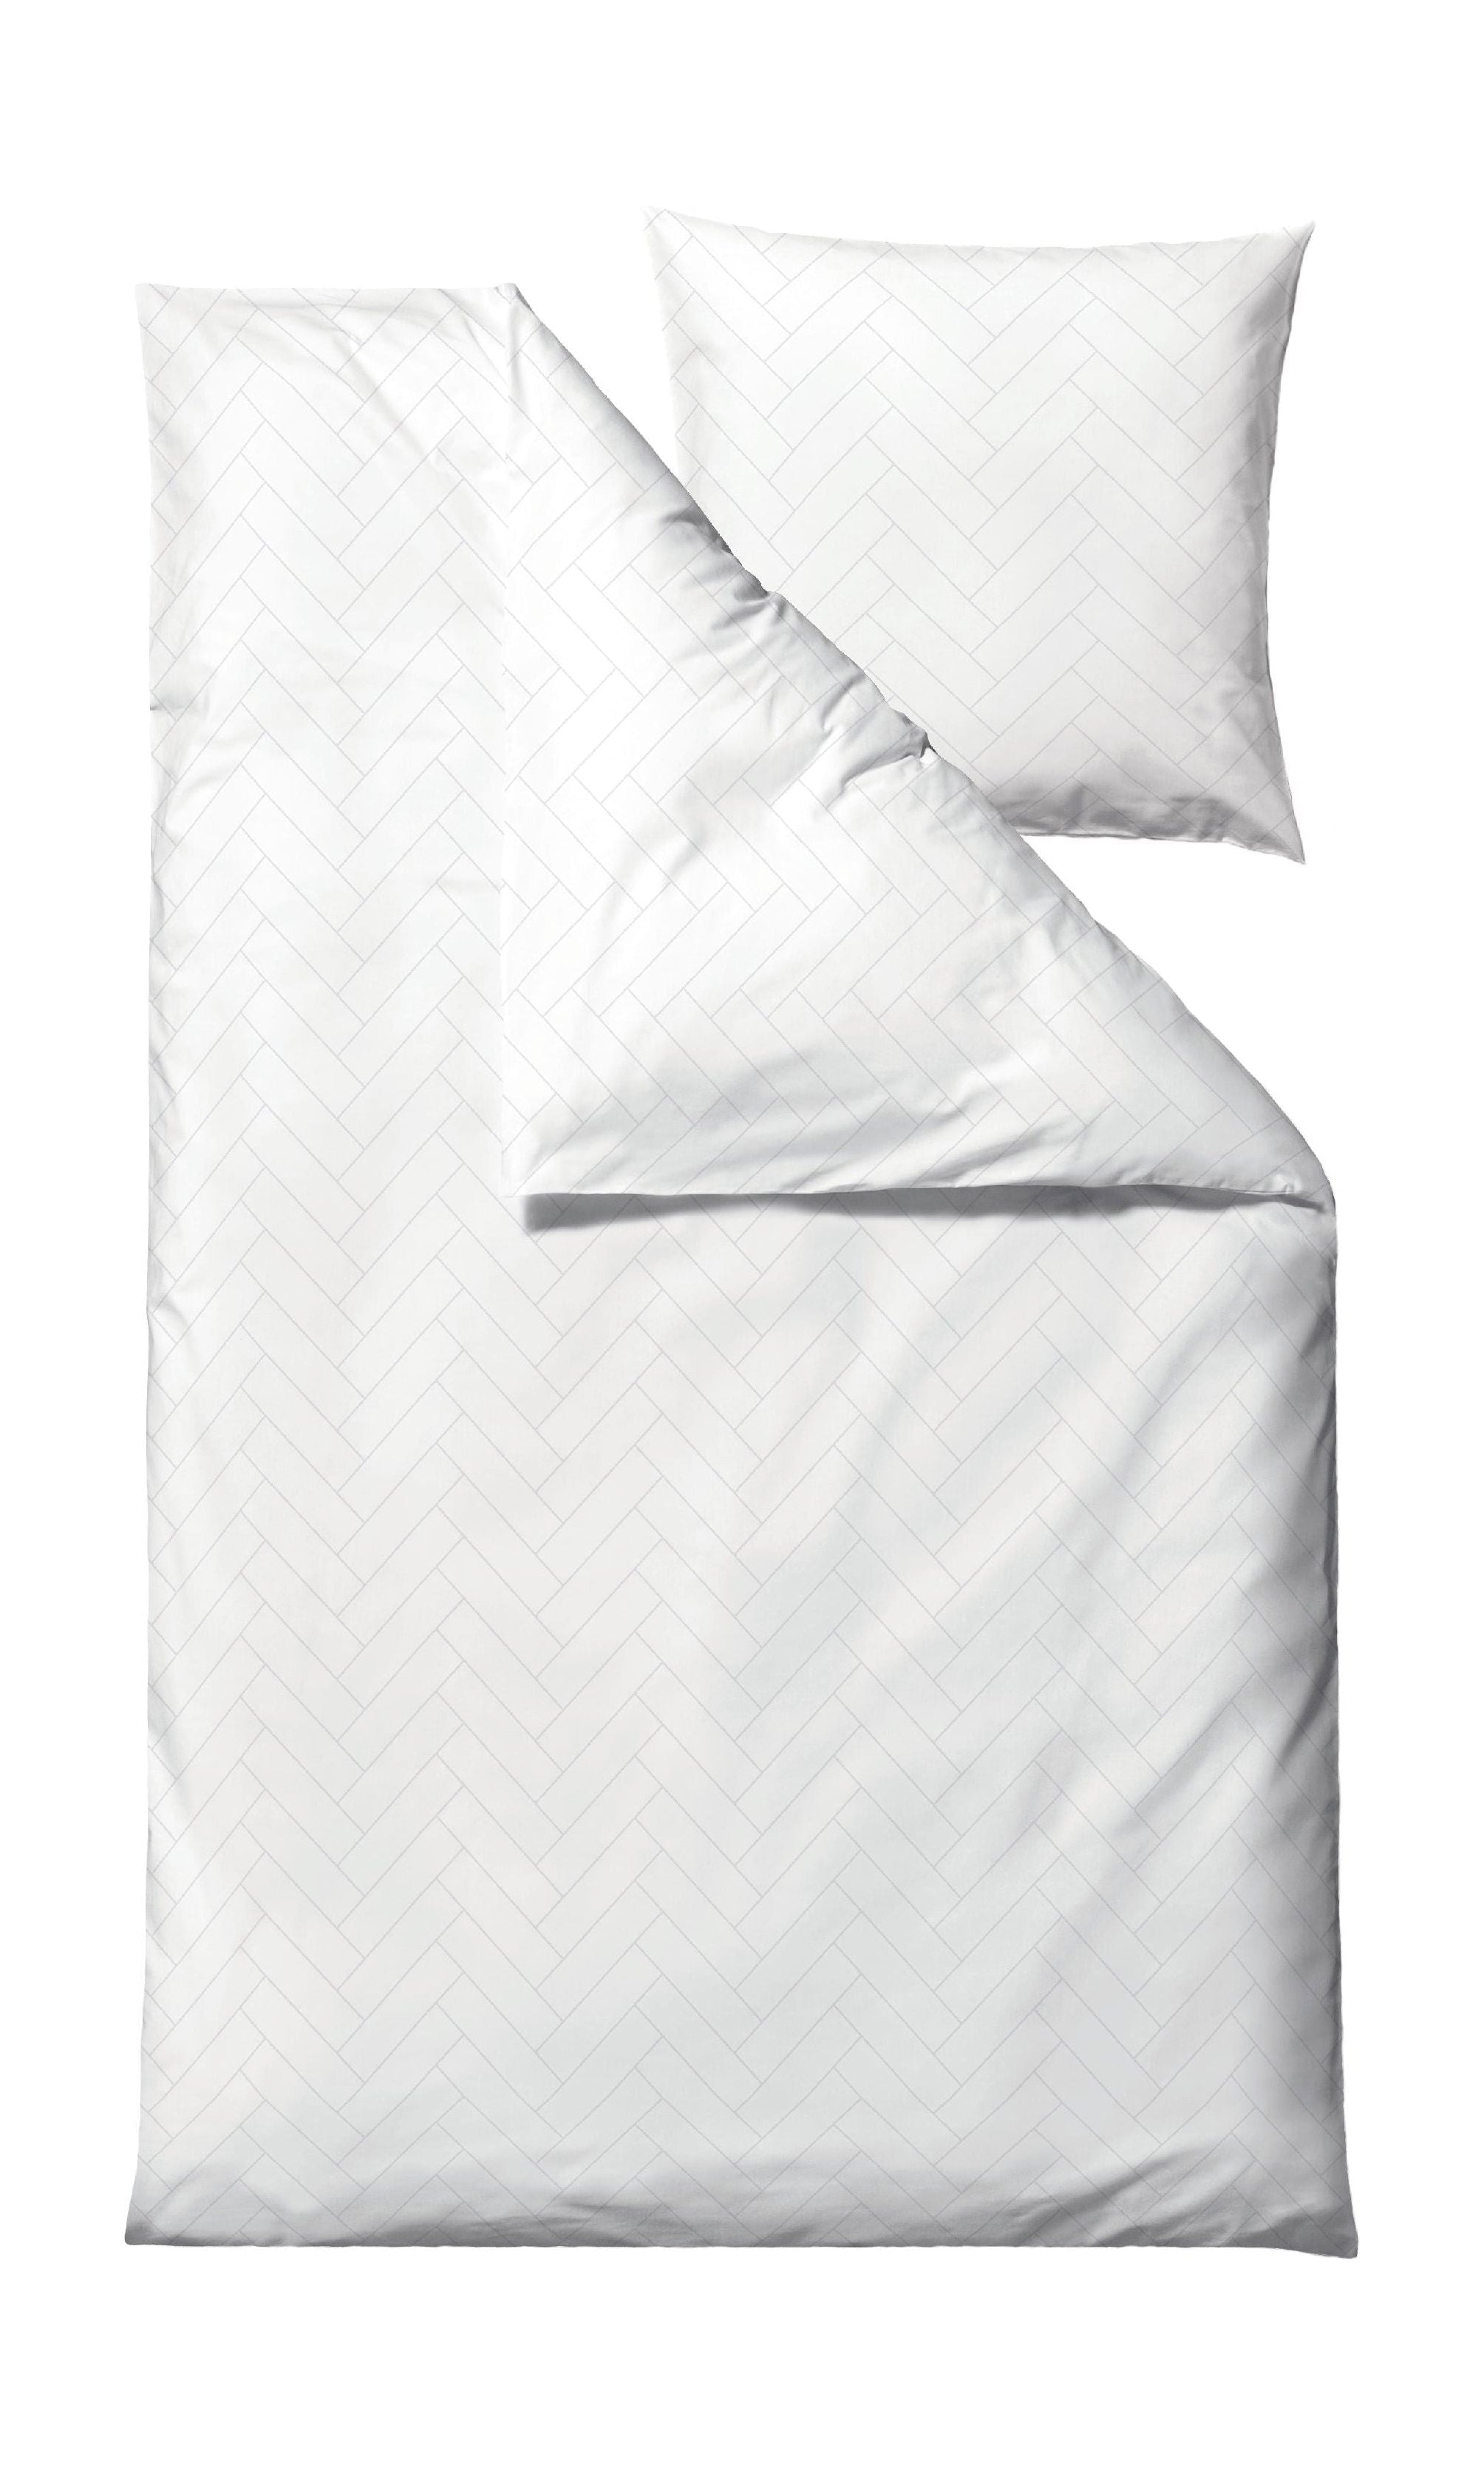 Söstahl brickor sängkläder 140x200 cm, vit